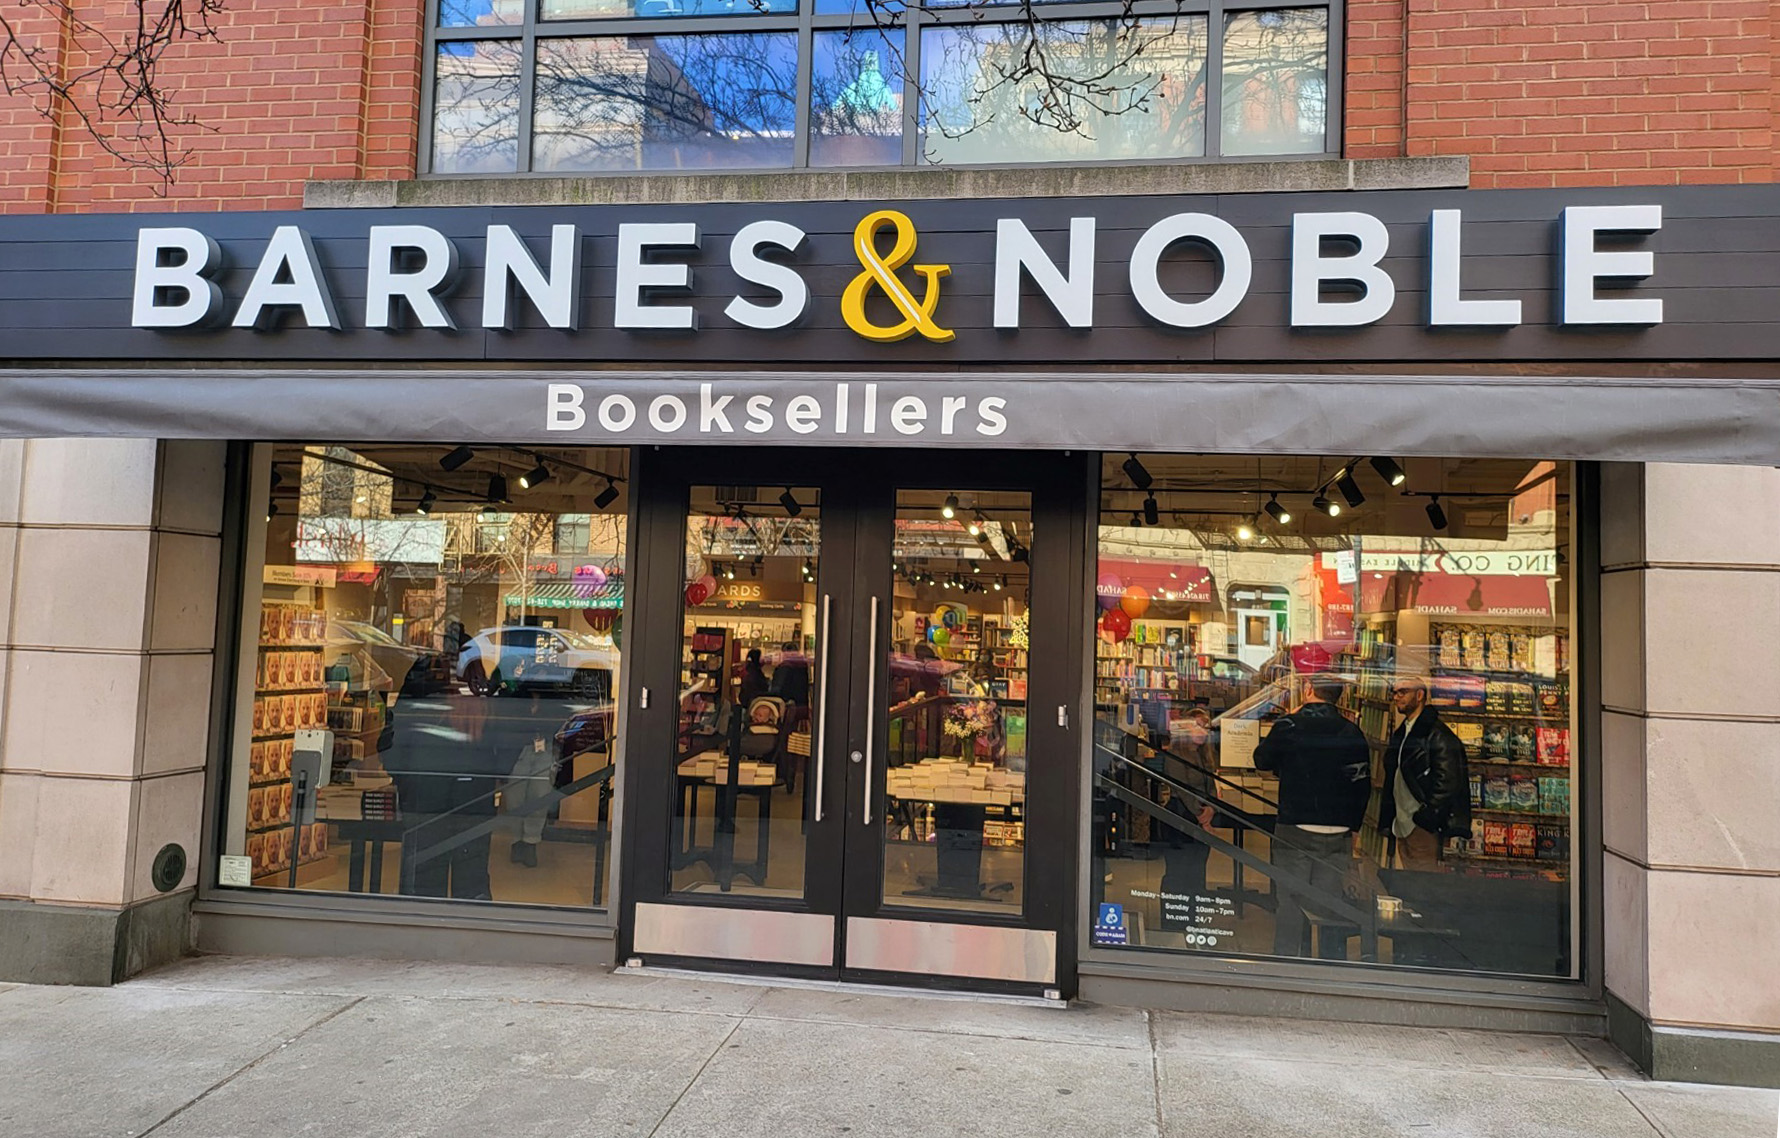 Barnes & Noble Bookstore in Atlantic Avenue, NY